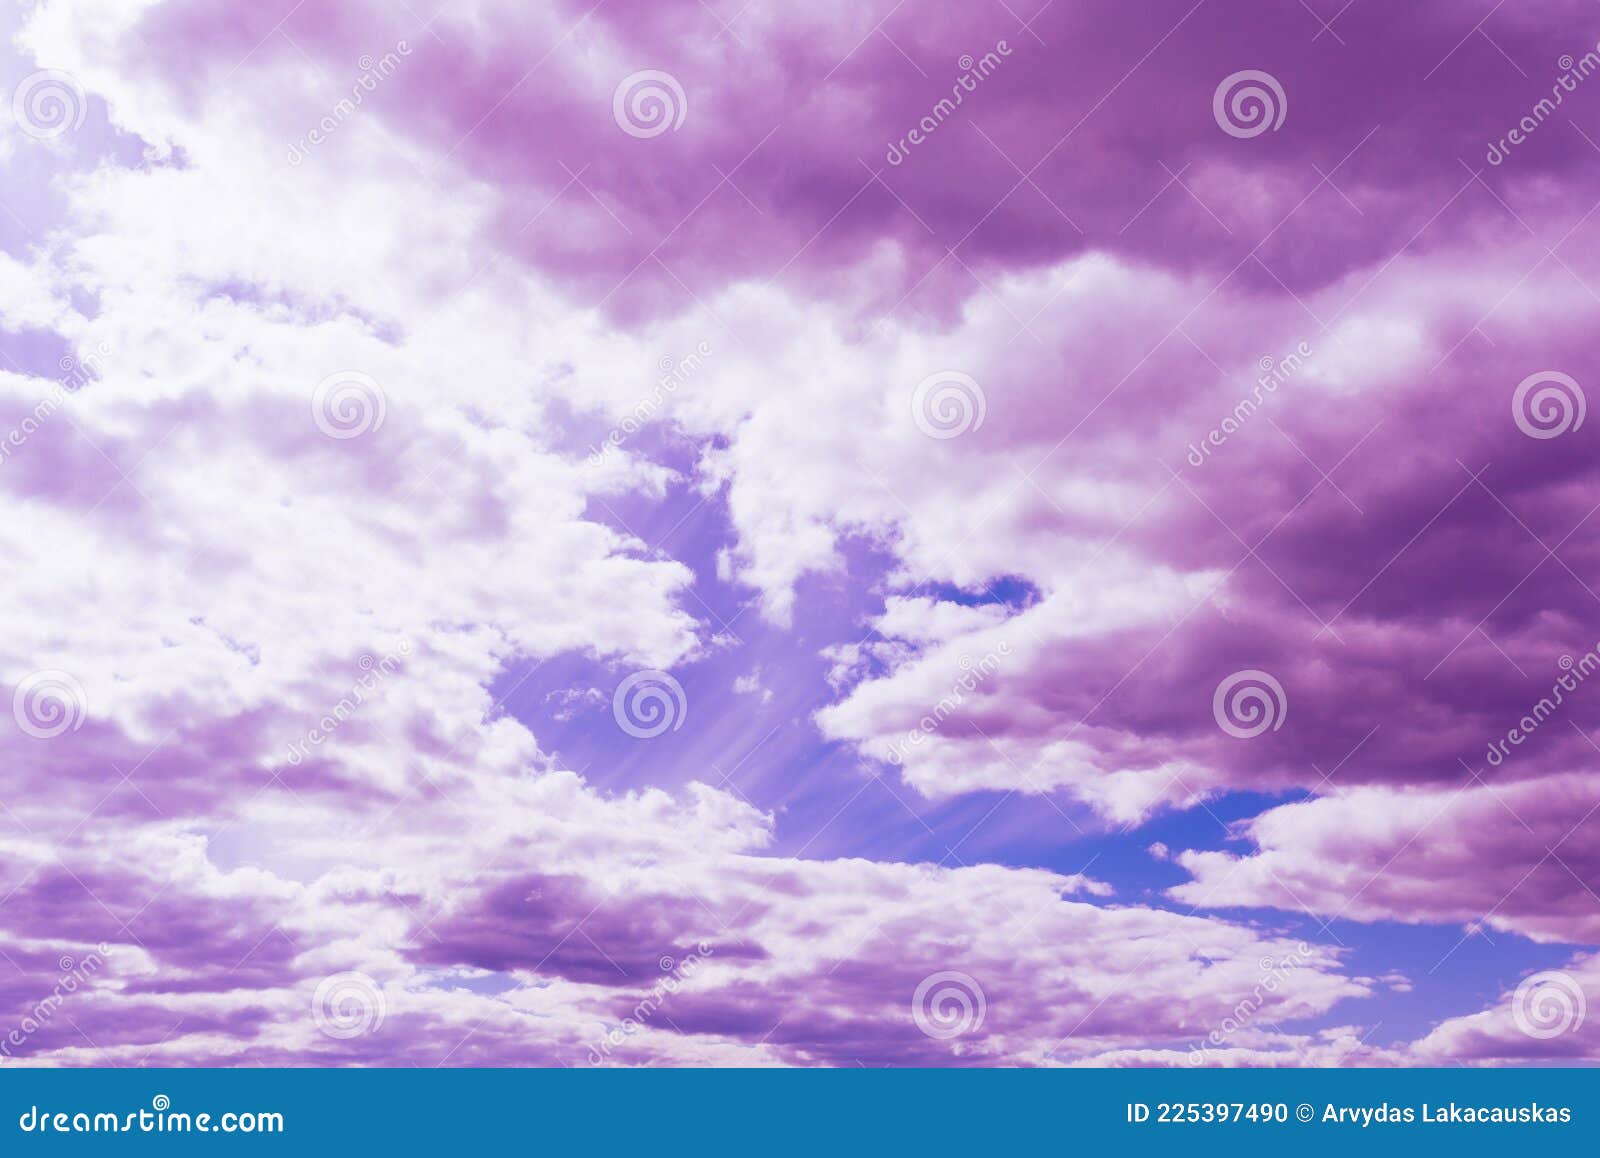 Bức ảnh này chứa đựng một cảnh tượng đầy mơ mộng. Với mây tím trên bầu trời xanh đẹp, cảnh tượng này là một bức tranh tuyệt đẹp của mẹ thiên nhiên. Hãy cùng ngắm nhìn để cảm nhận được sự huyền ảo và lãng mạn của cảnh đêm trên bầu trời.